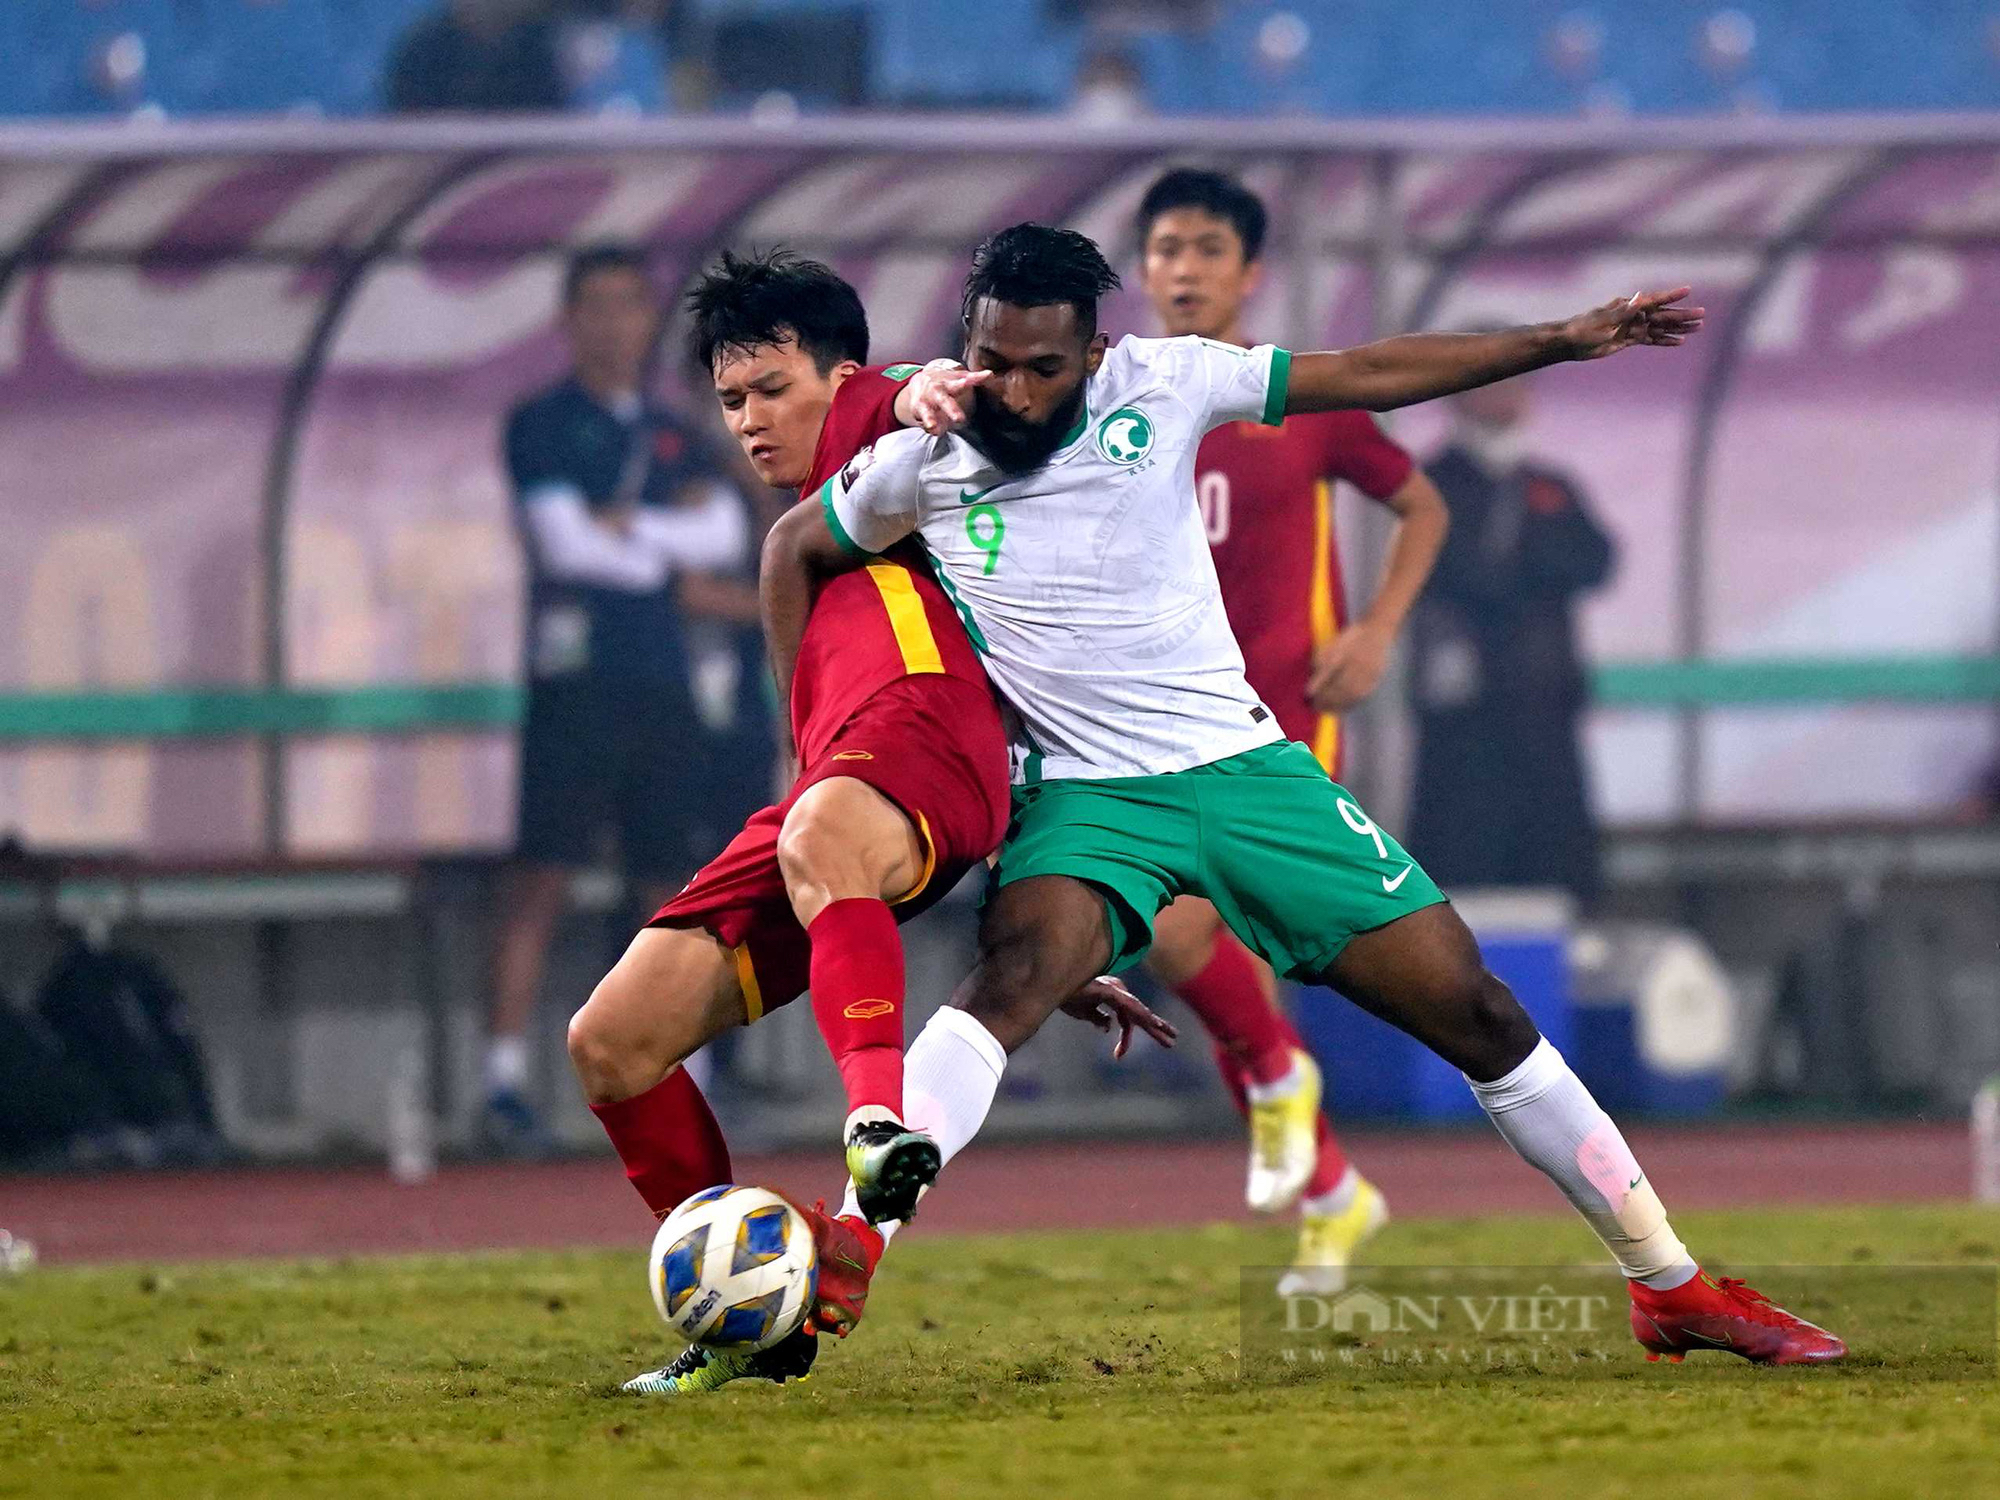 Chùm ảnh tuyển Việt Nam thi đấu lăn xả trước đội tuyển Ả Rập Xê Út - Ảnh 10.